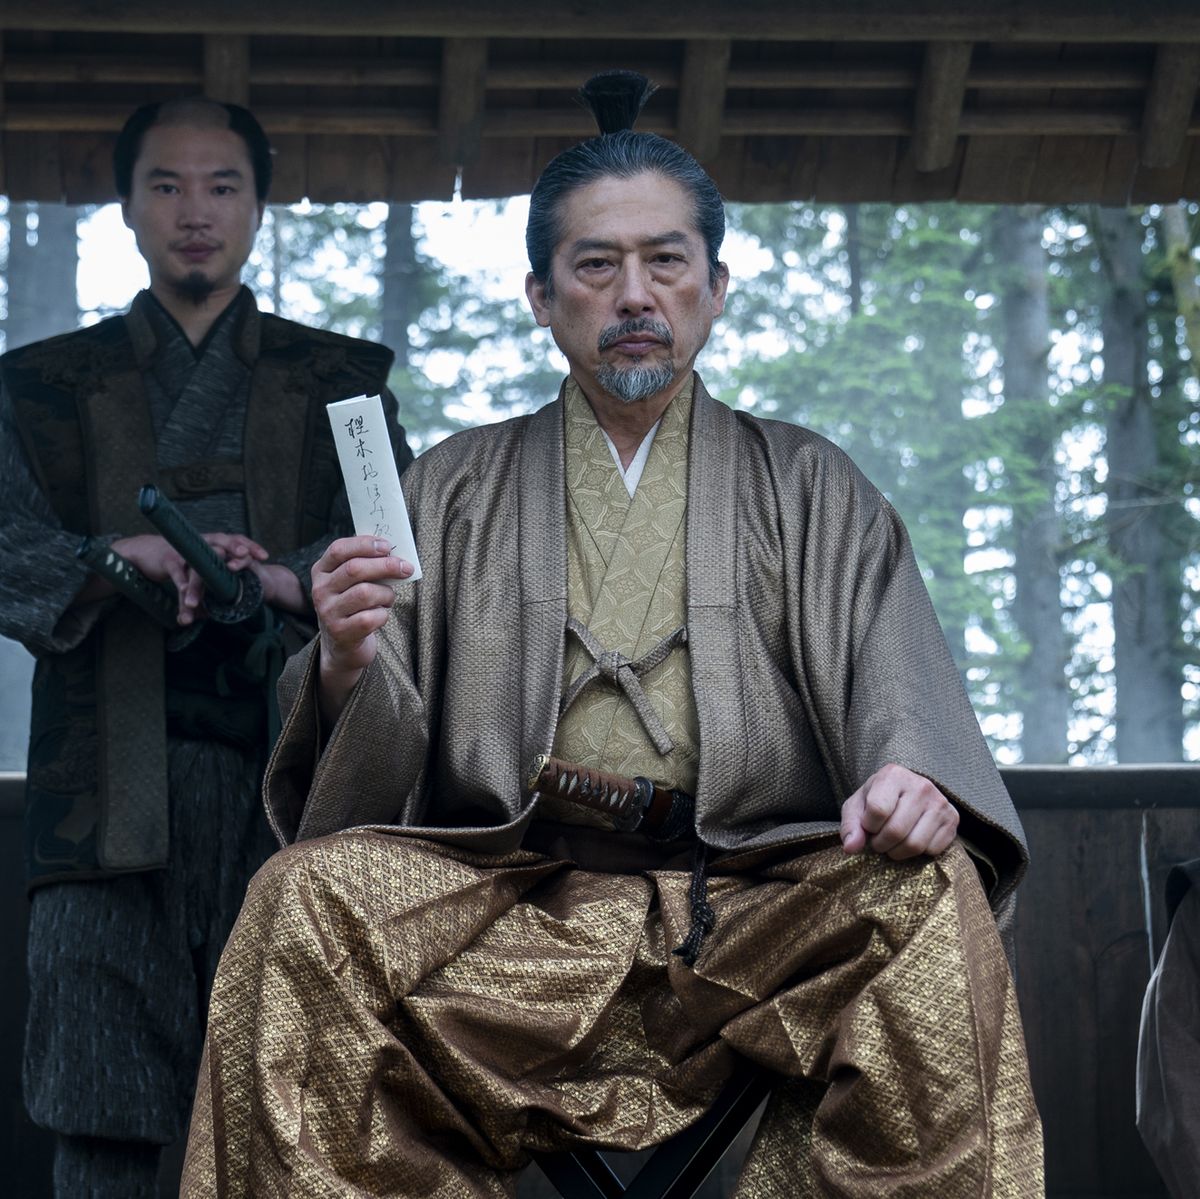 shogun, episode 10